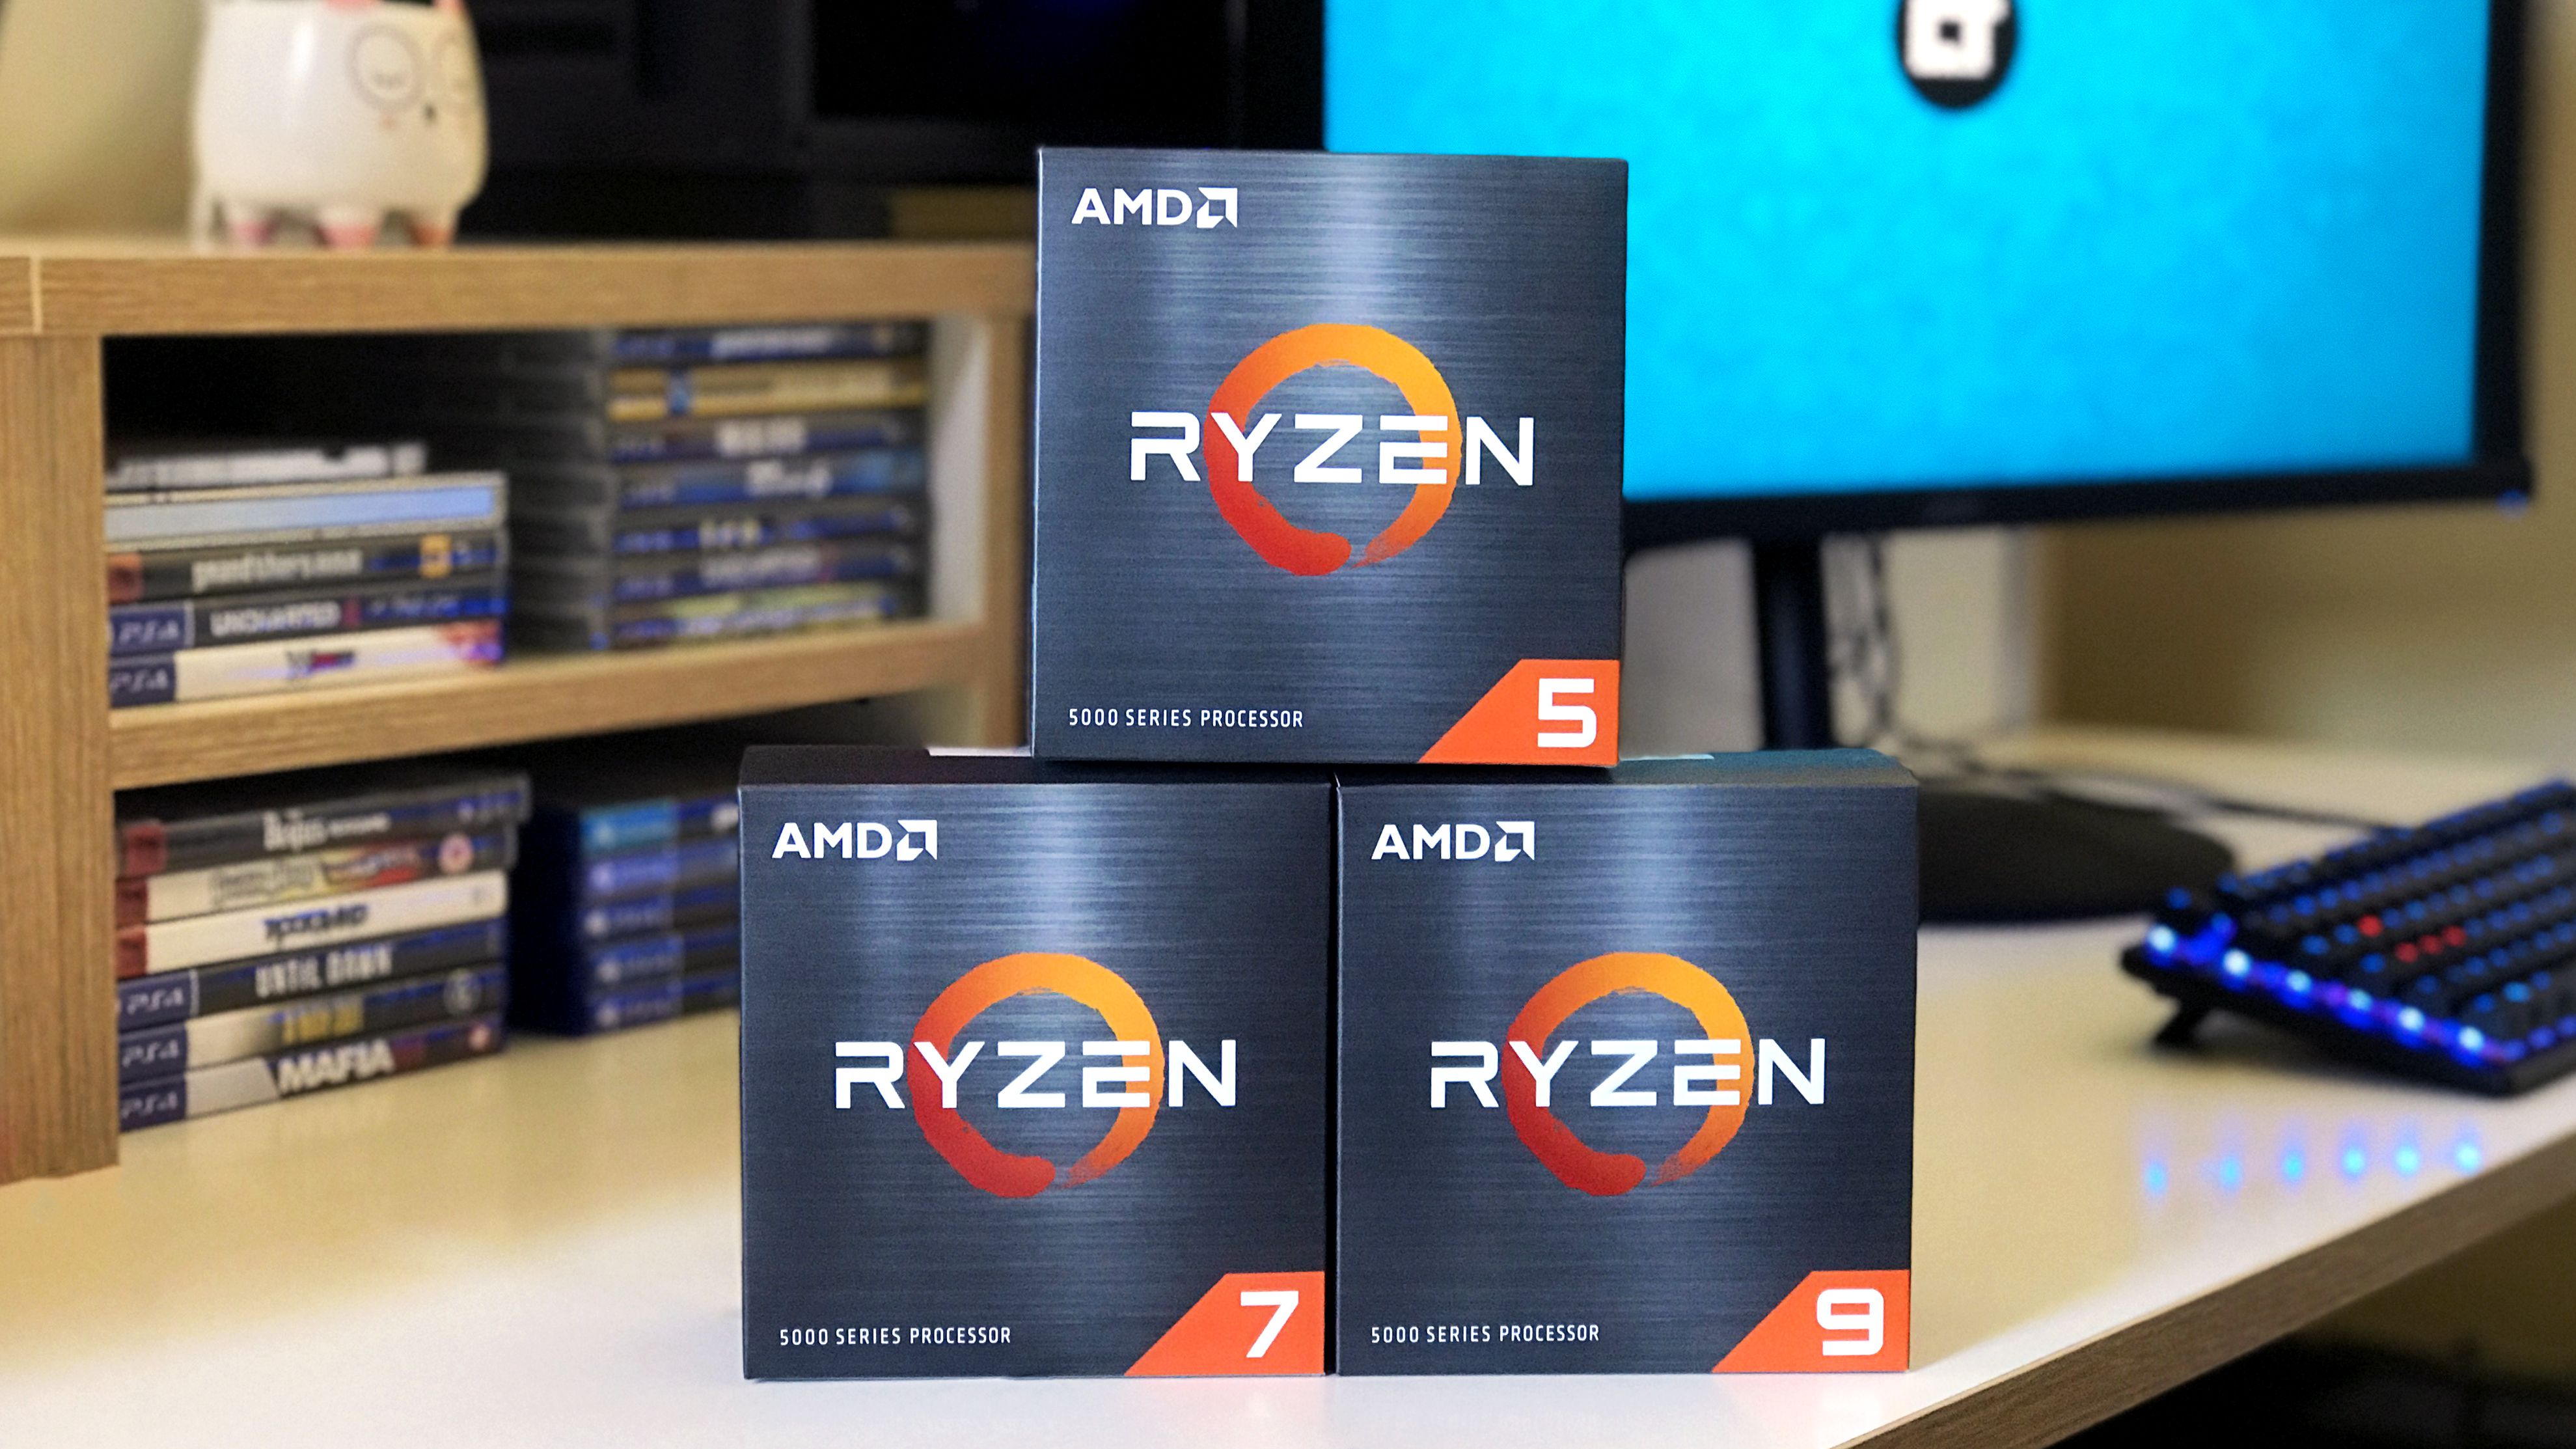 "Tropa de choque" da AMD: Ryzen 5000 vêm com microarquitetura Zen 3 e diversas melhorias que aumentam performance ao mesmo tempo que poupam energia (Foto: Sergio Oliveira/Canaltech)